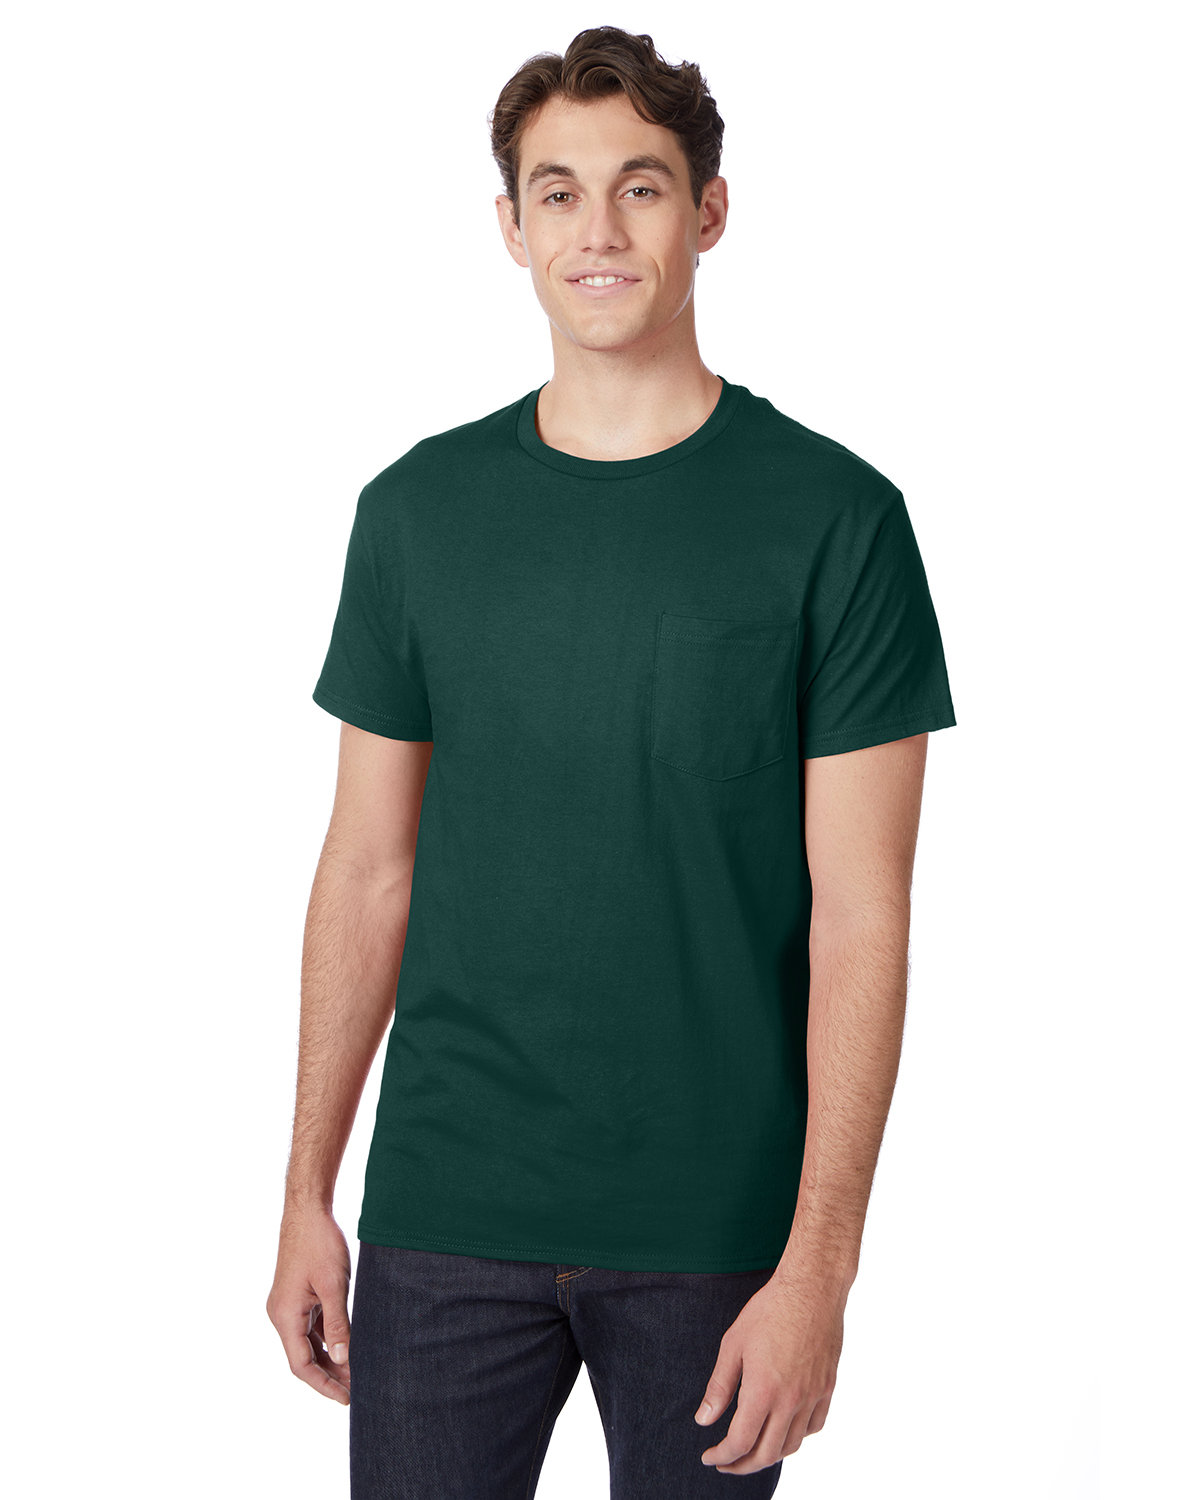 Hanes Men's Authentic-T Pocket T-Shirt deep forest 